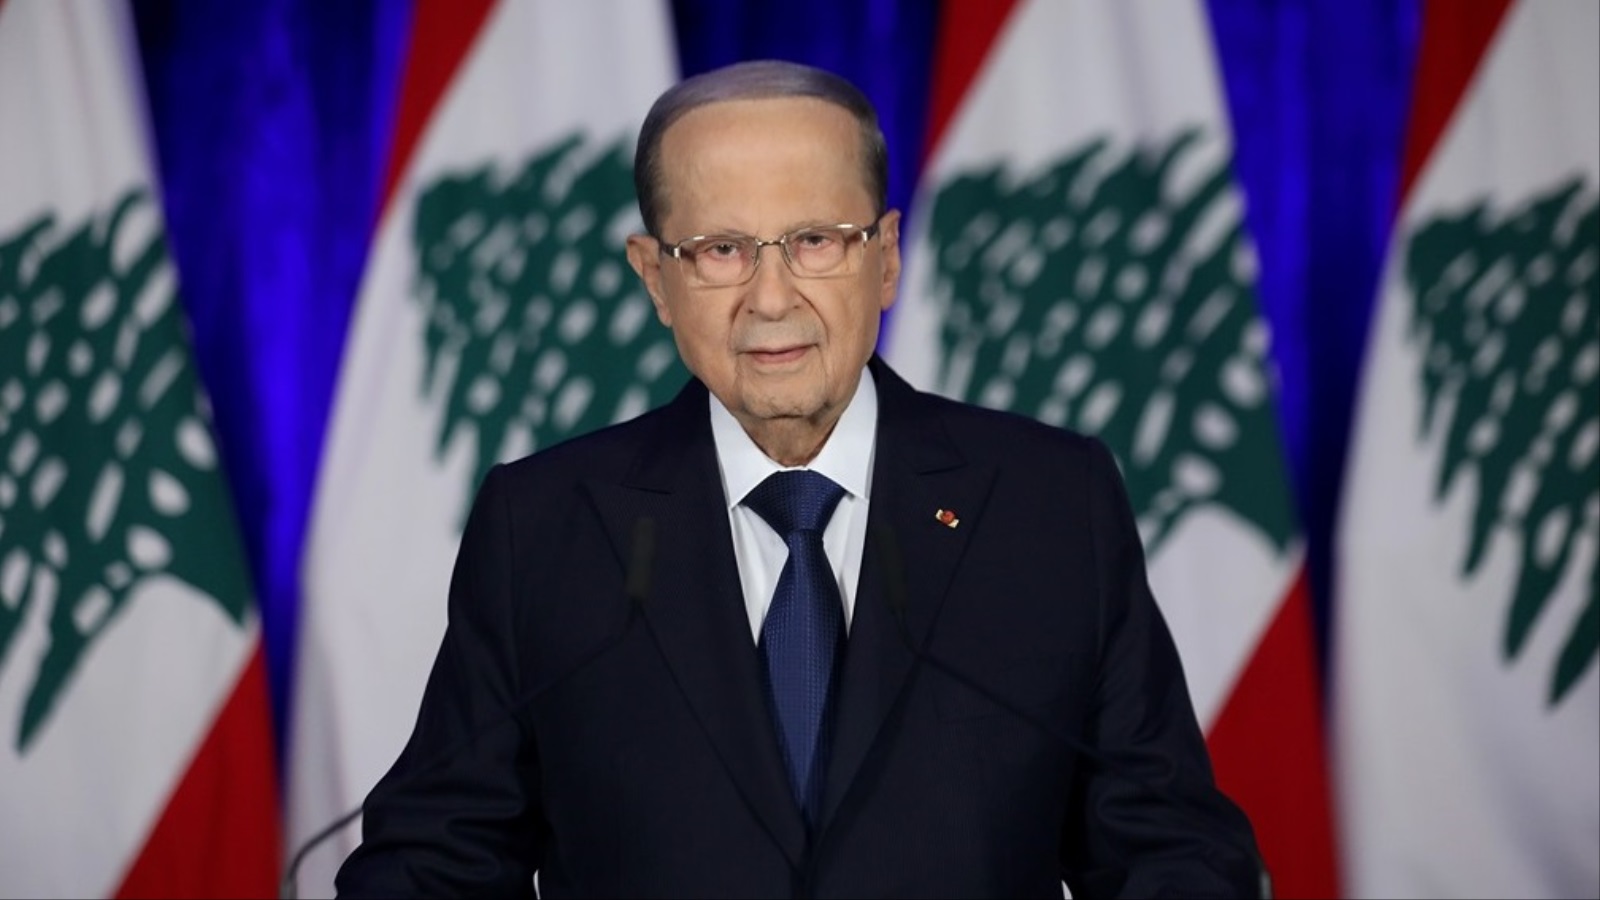 ‪الرئيس اللبناني ميشال عون يتحدث إلى الشعب بمناسبة ذكرى الاستقلال‬ (الصحافة اللبنانية)